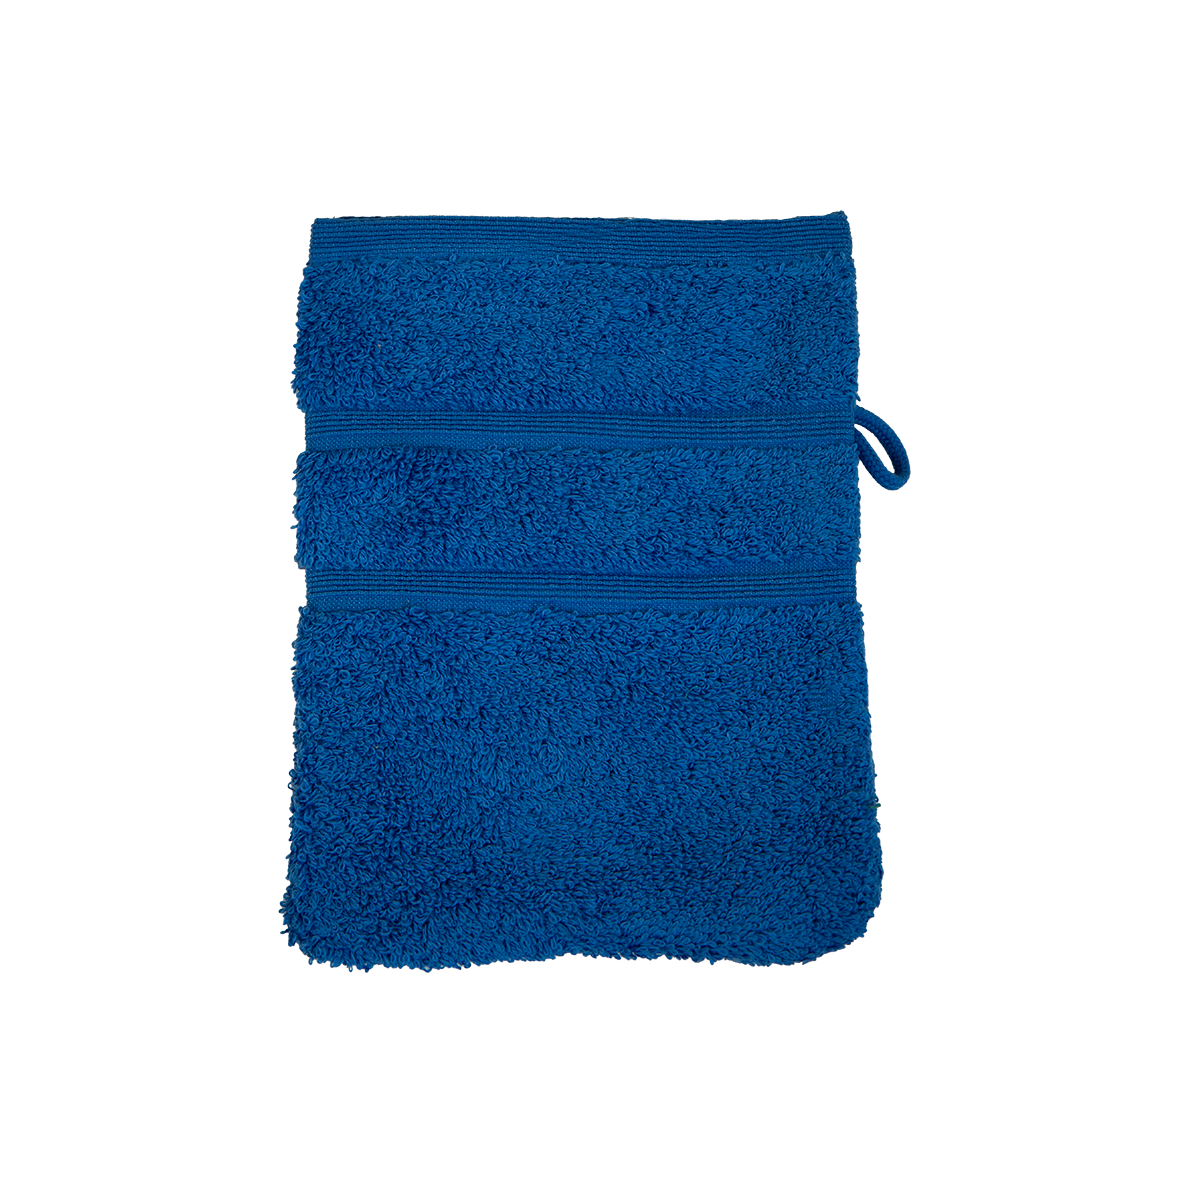 Bio Baumwoll Waschhandschuh, Größe 16 mal 21 cm in der Farbe Royal (kräftiges dunkles Blau)